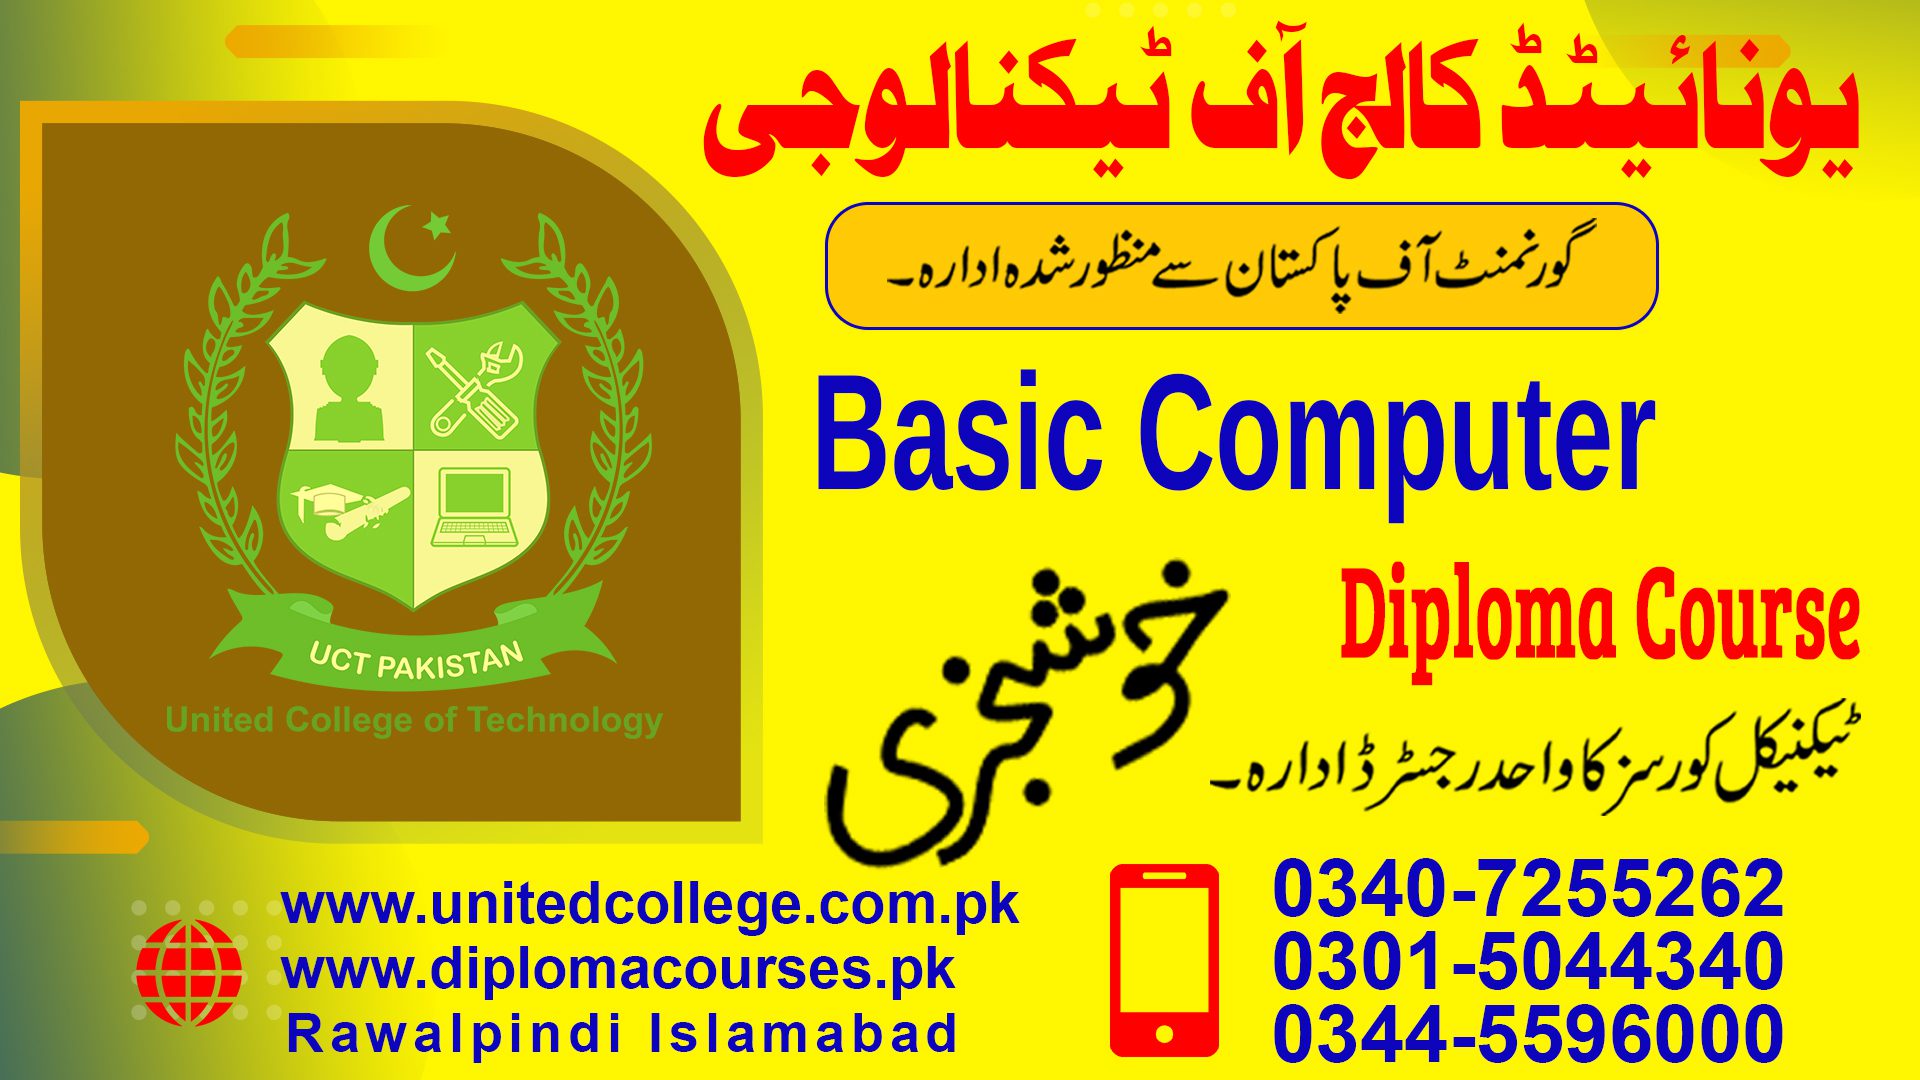 BASIC COMPUTER COURSE IN RAWALPINDI ISLAMABAD PAKISTAN